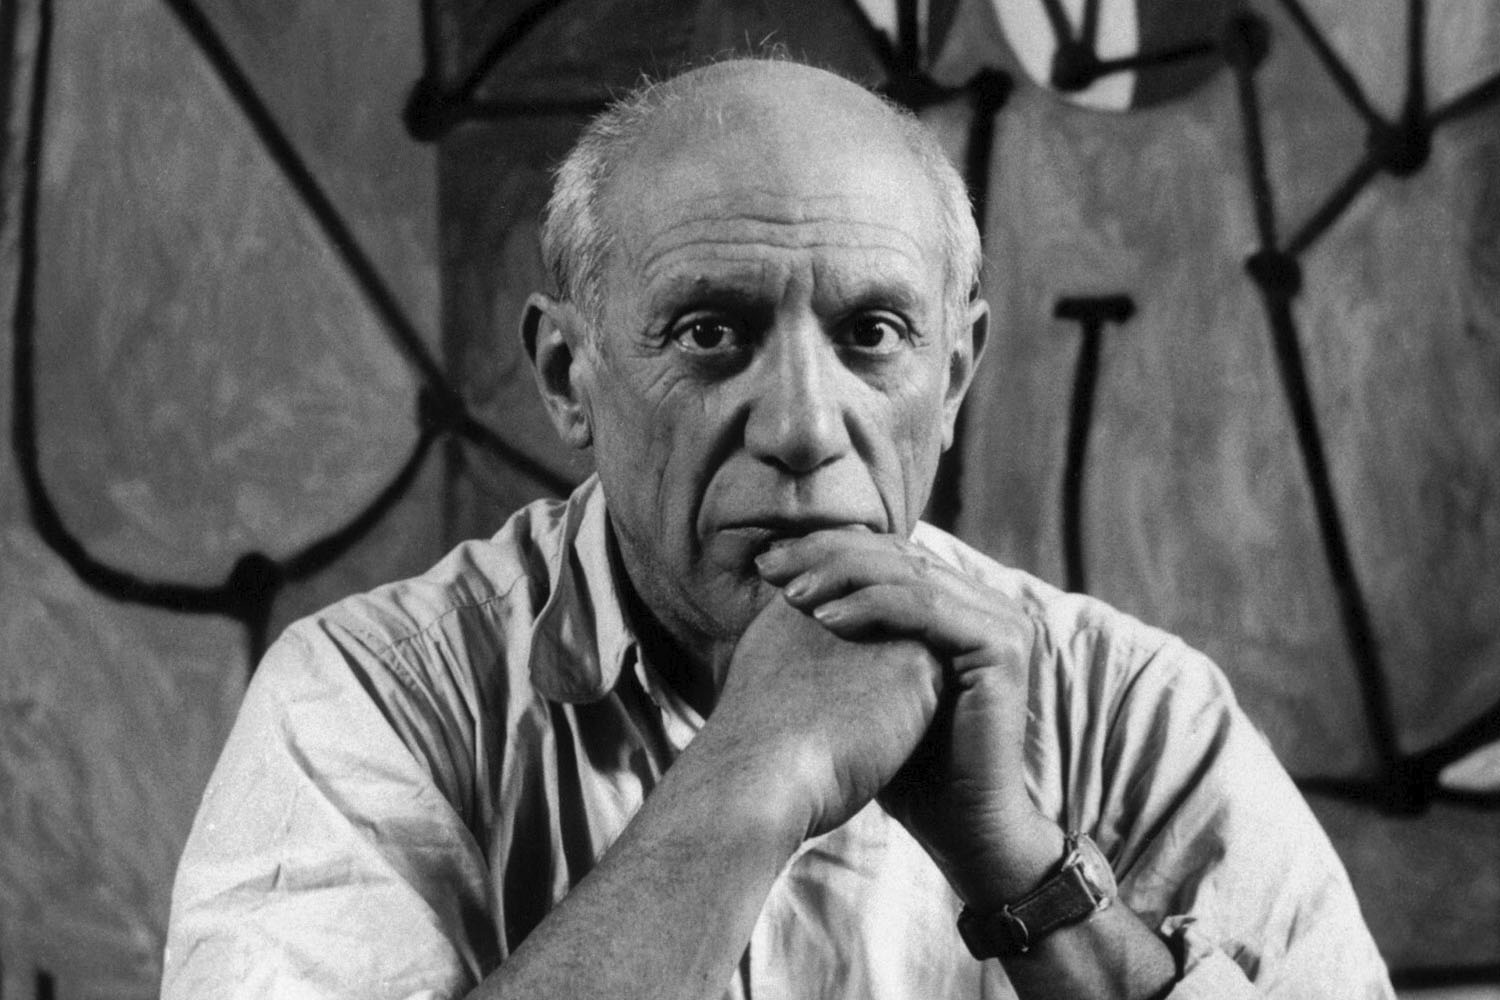 Exposición fotográfica "Picasso por los grandes maestros"